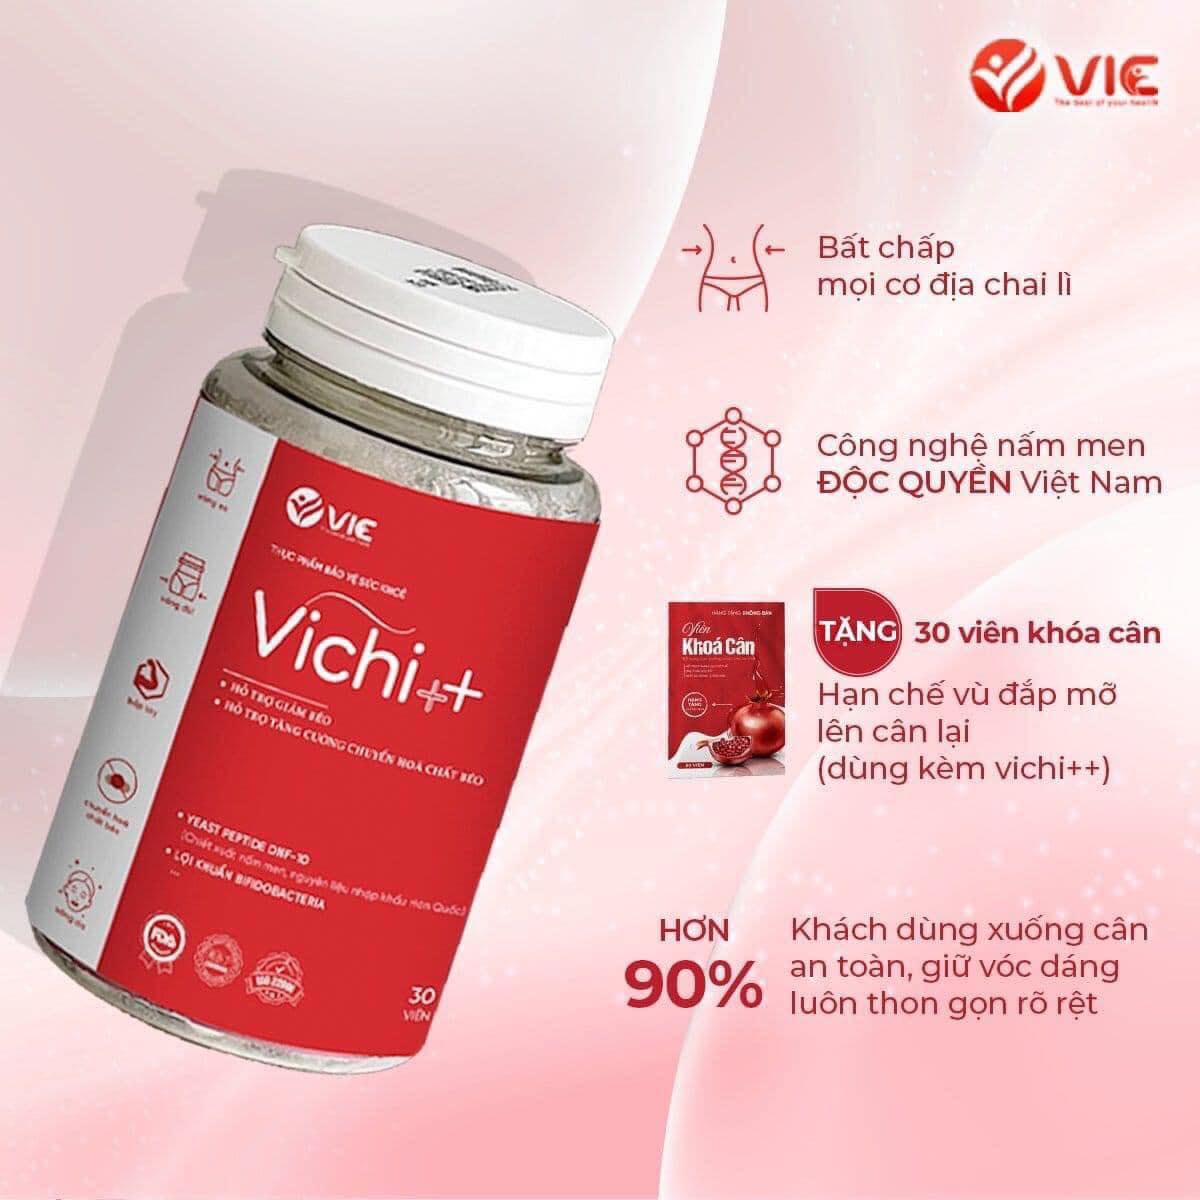 Siêu phẩm trị lờn giảm cân Vichi ++